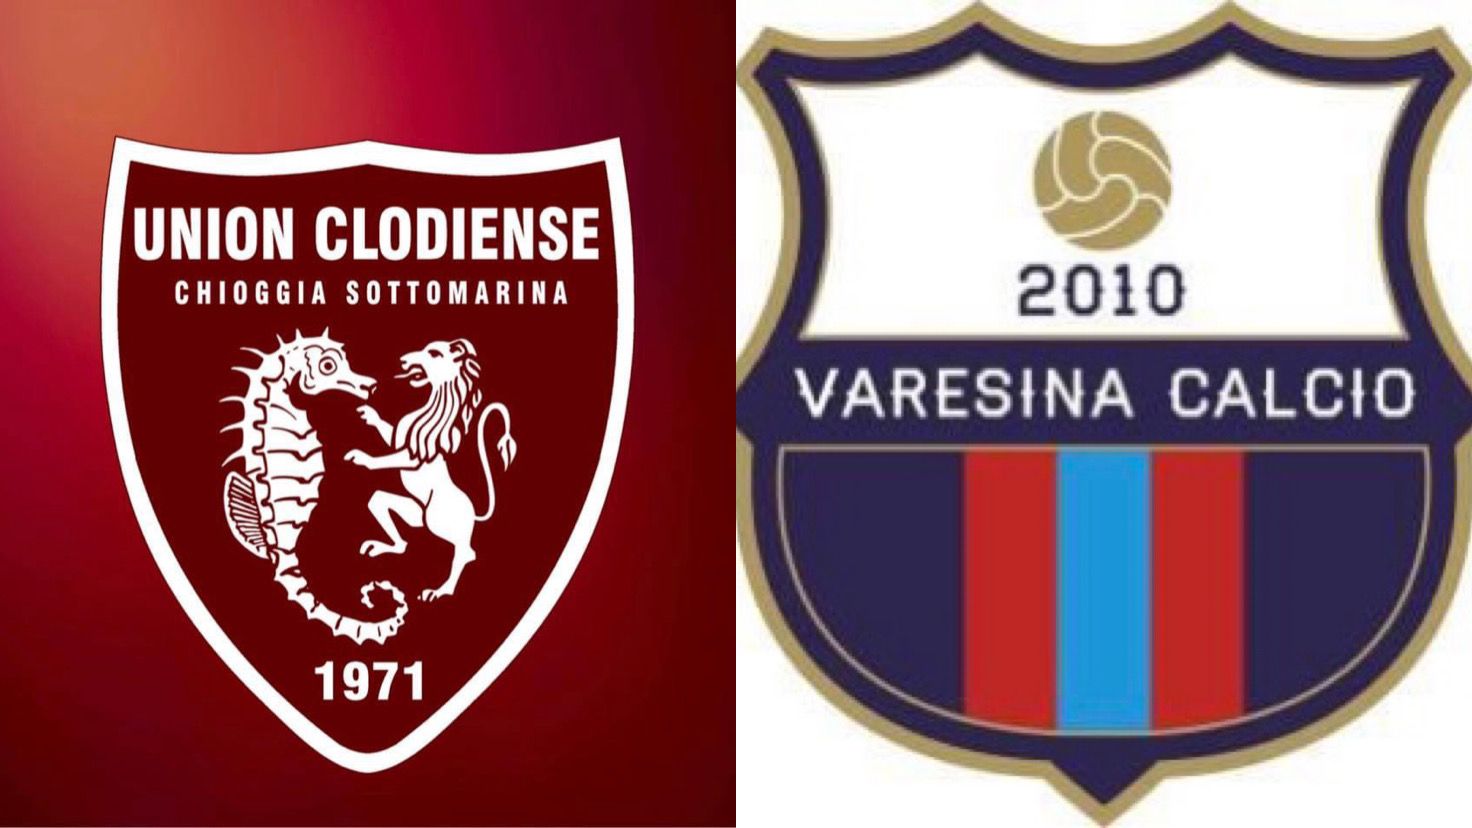 Coppa Italia, per la Varesina la semifinale passa dalla capolista del girone C: l’Union Clodiense attende i rossoblu